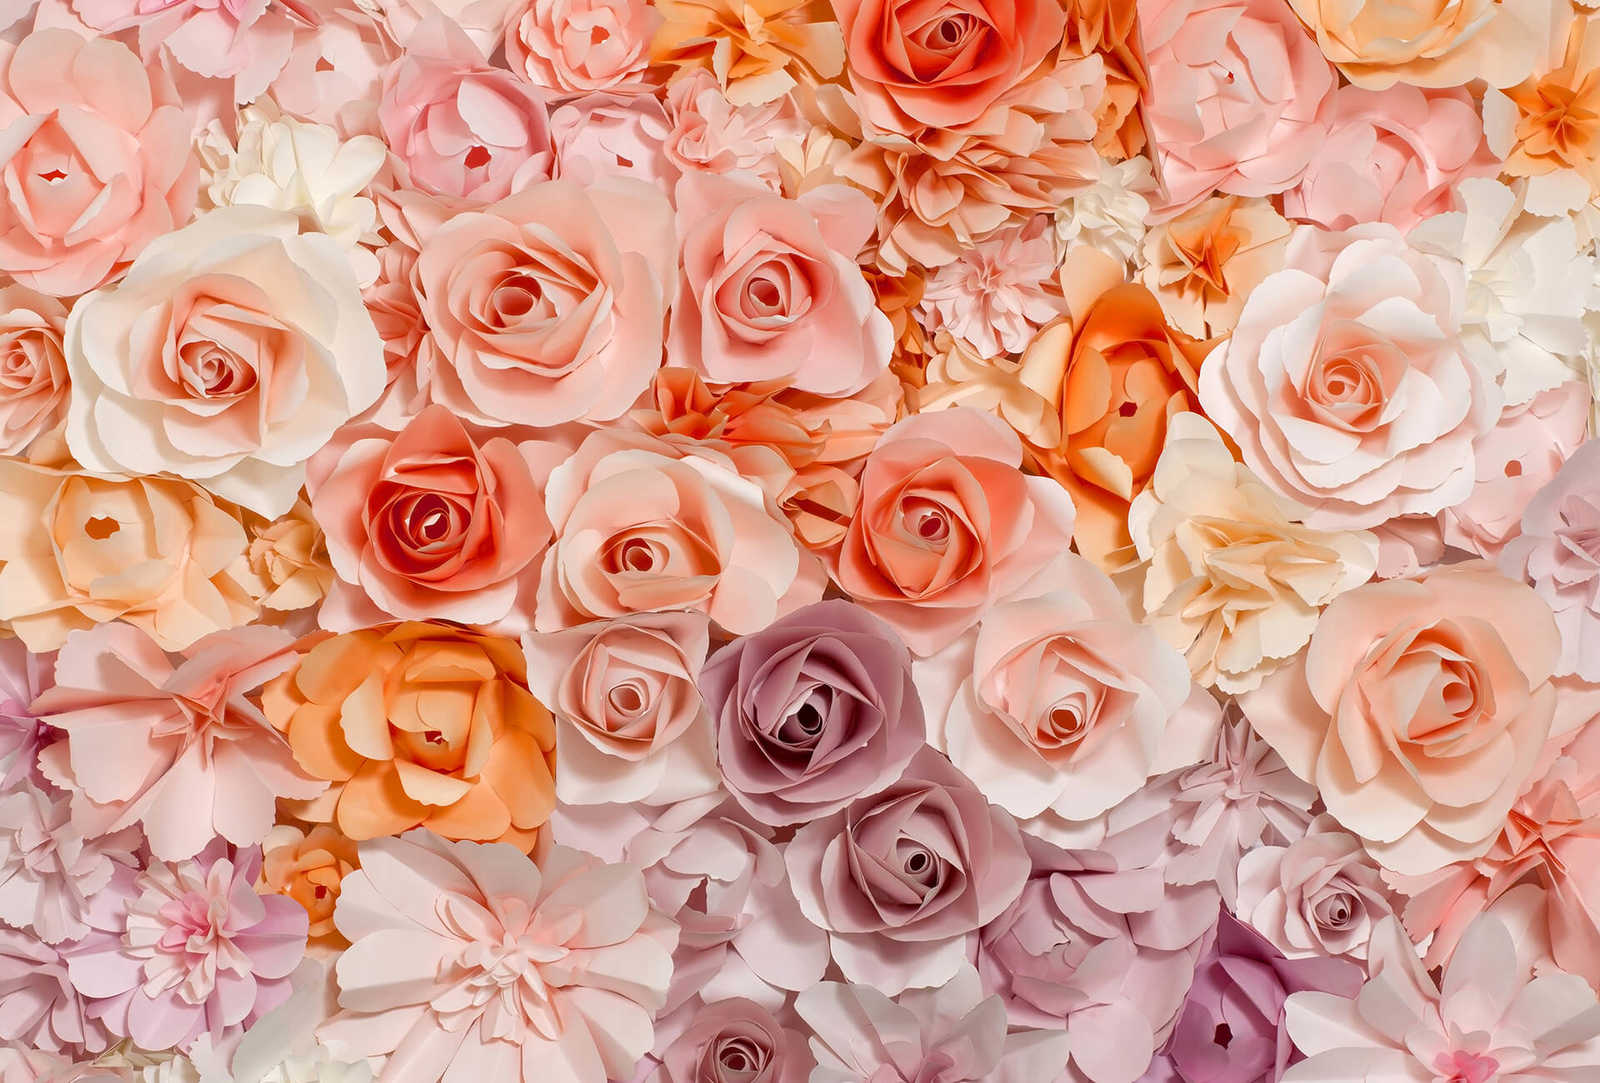 Papel pintado de rosas con motivos florales en 3D - rosa, blanco, naranja
